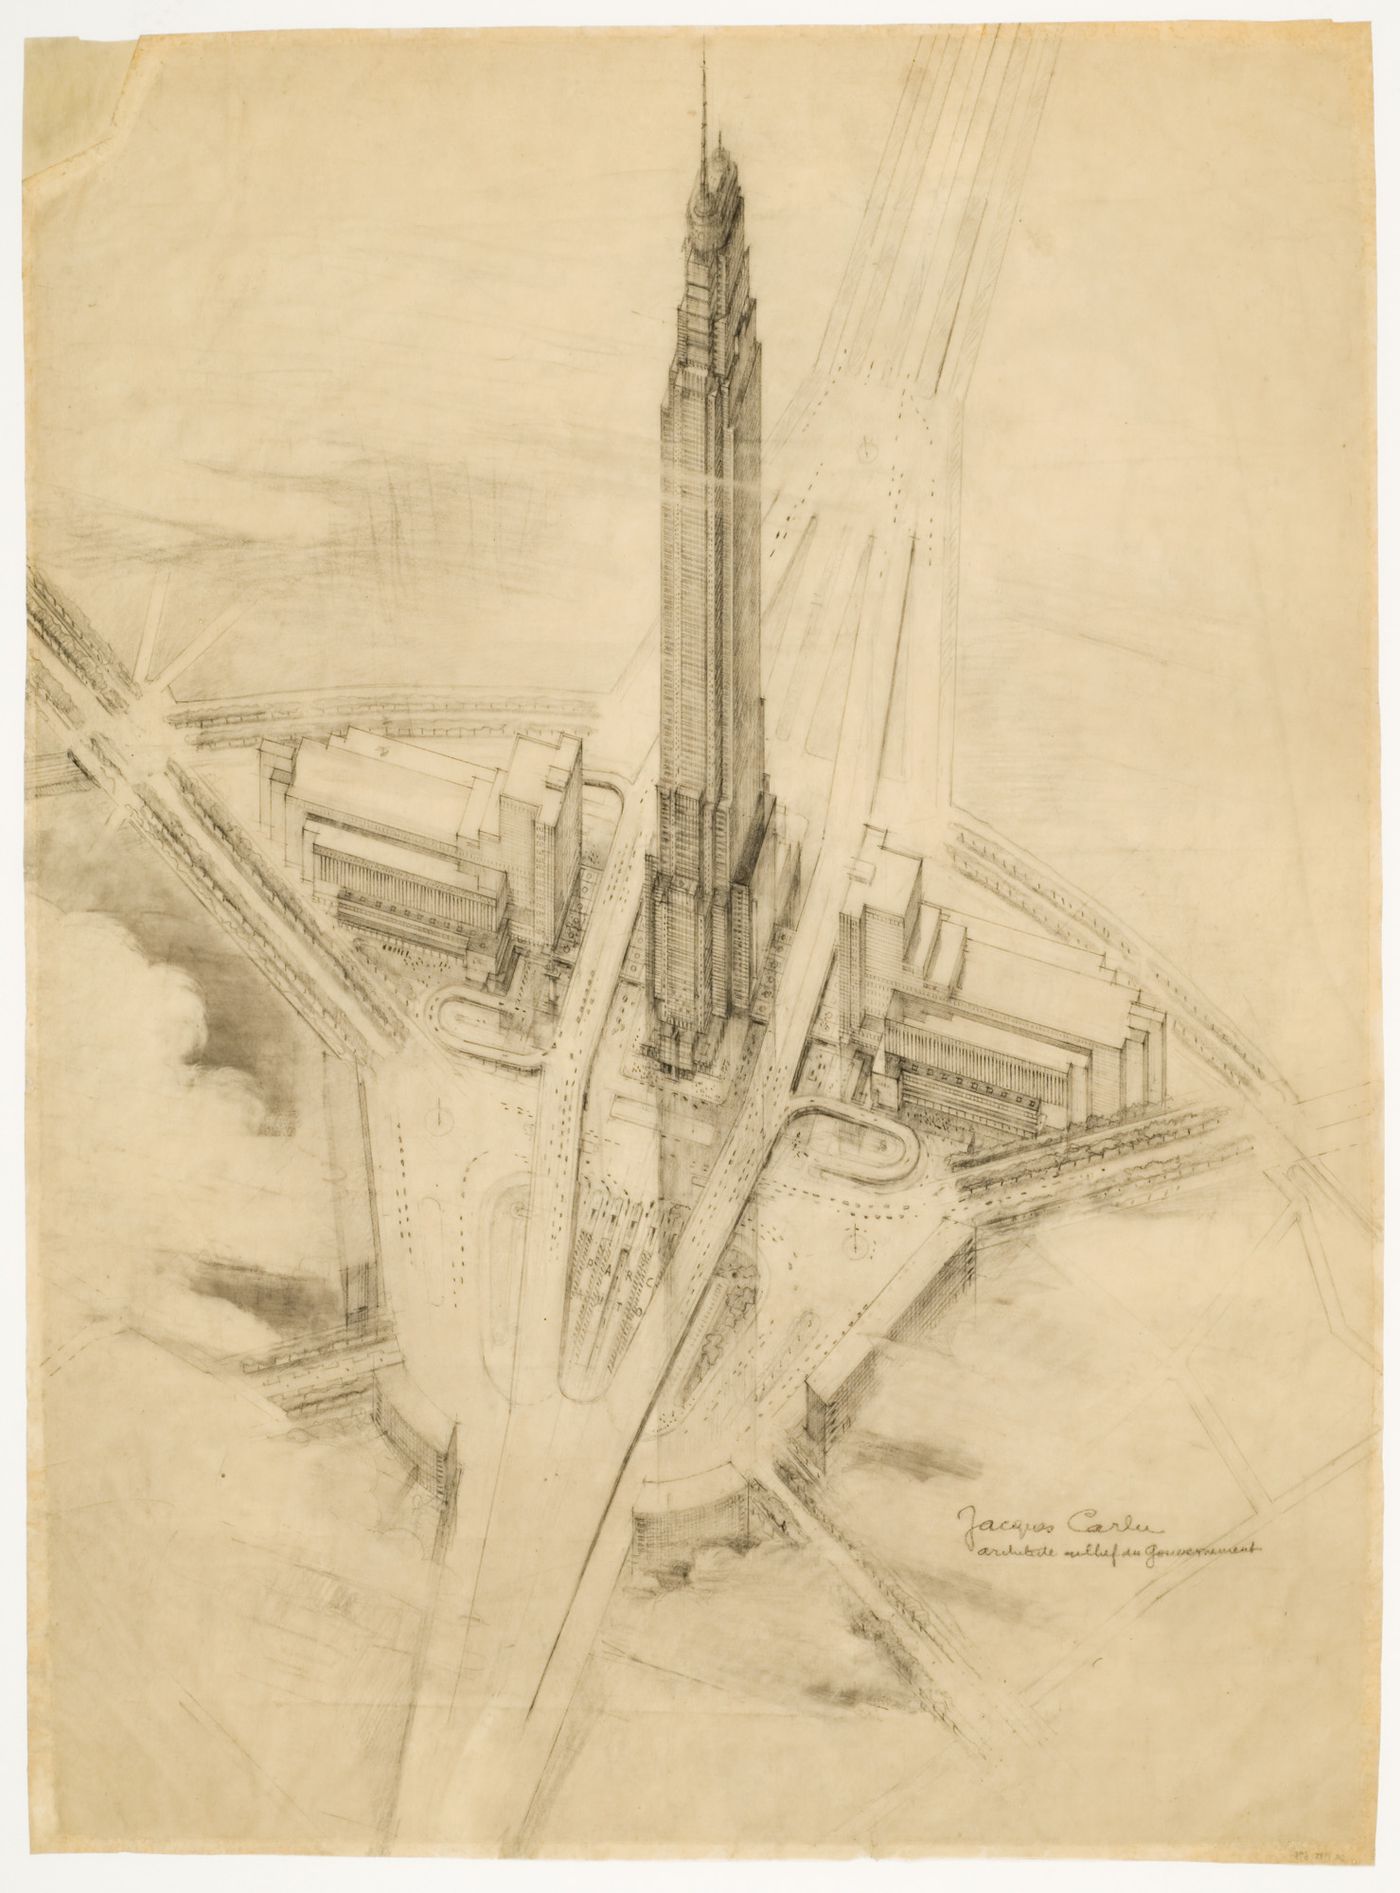 Skyscraper project for La Défense, Paris, France: aerial perspective / Projet de gratte-ciel à La Défense: perspective aérienne